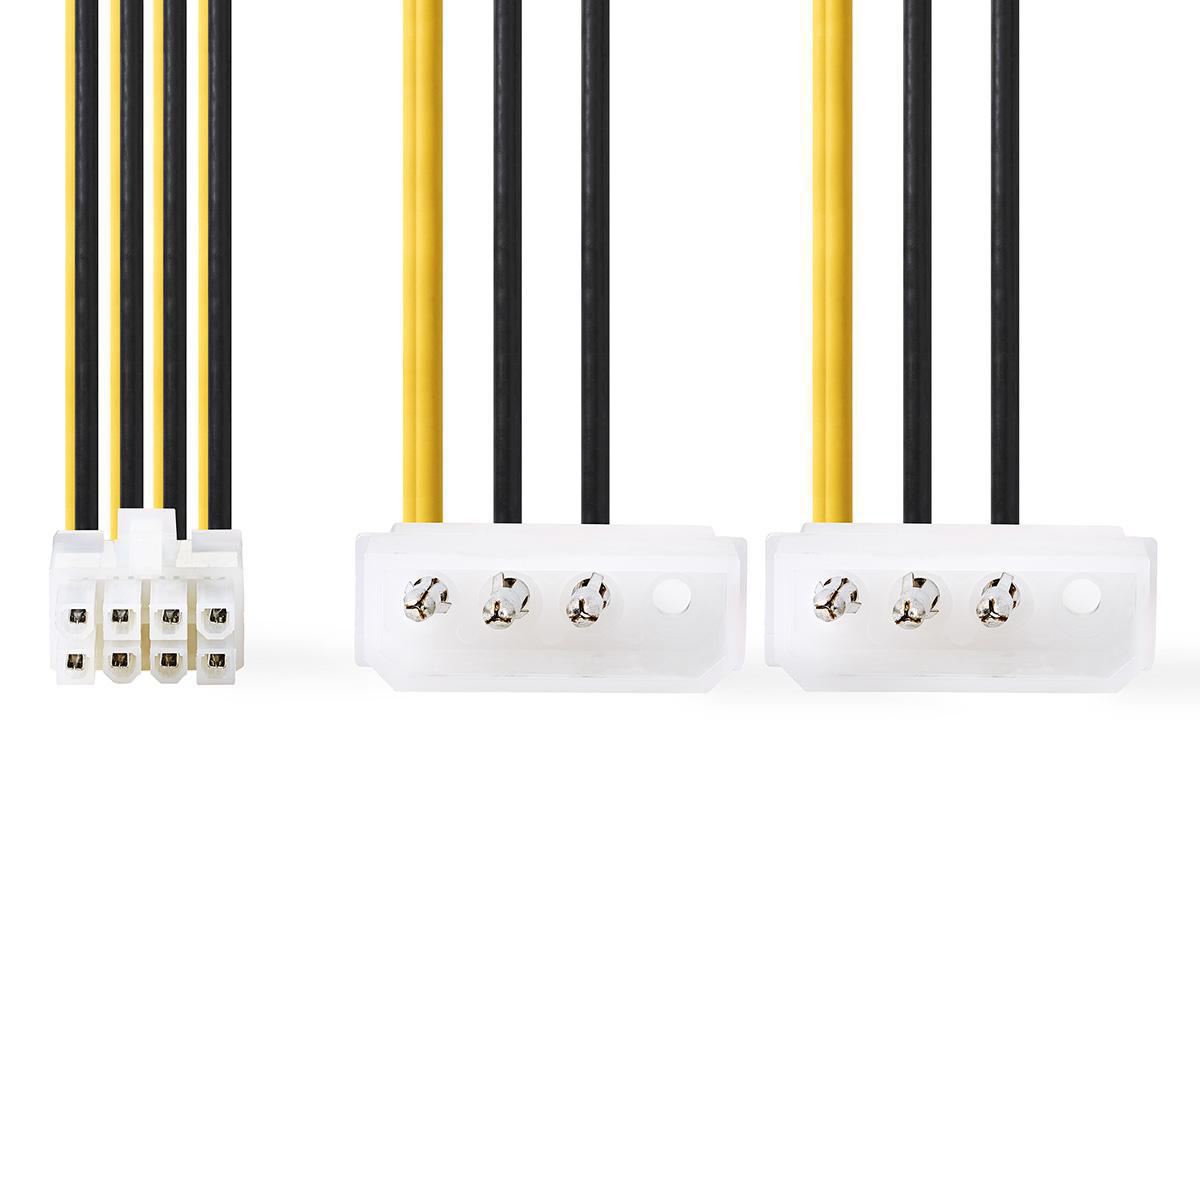 Interní napájecí kabel | EPS 8-pin Zástrčka - 2x Molex Zástrčka | 0,15 m | Různé